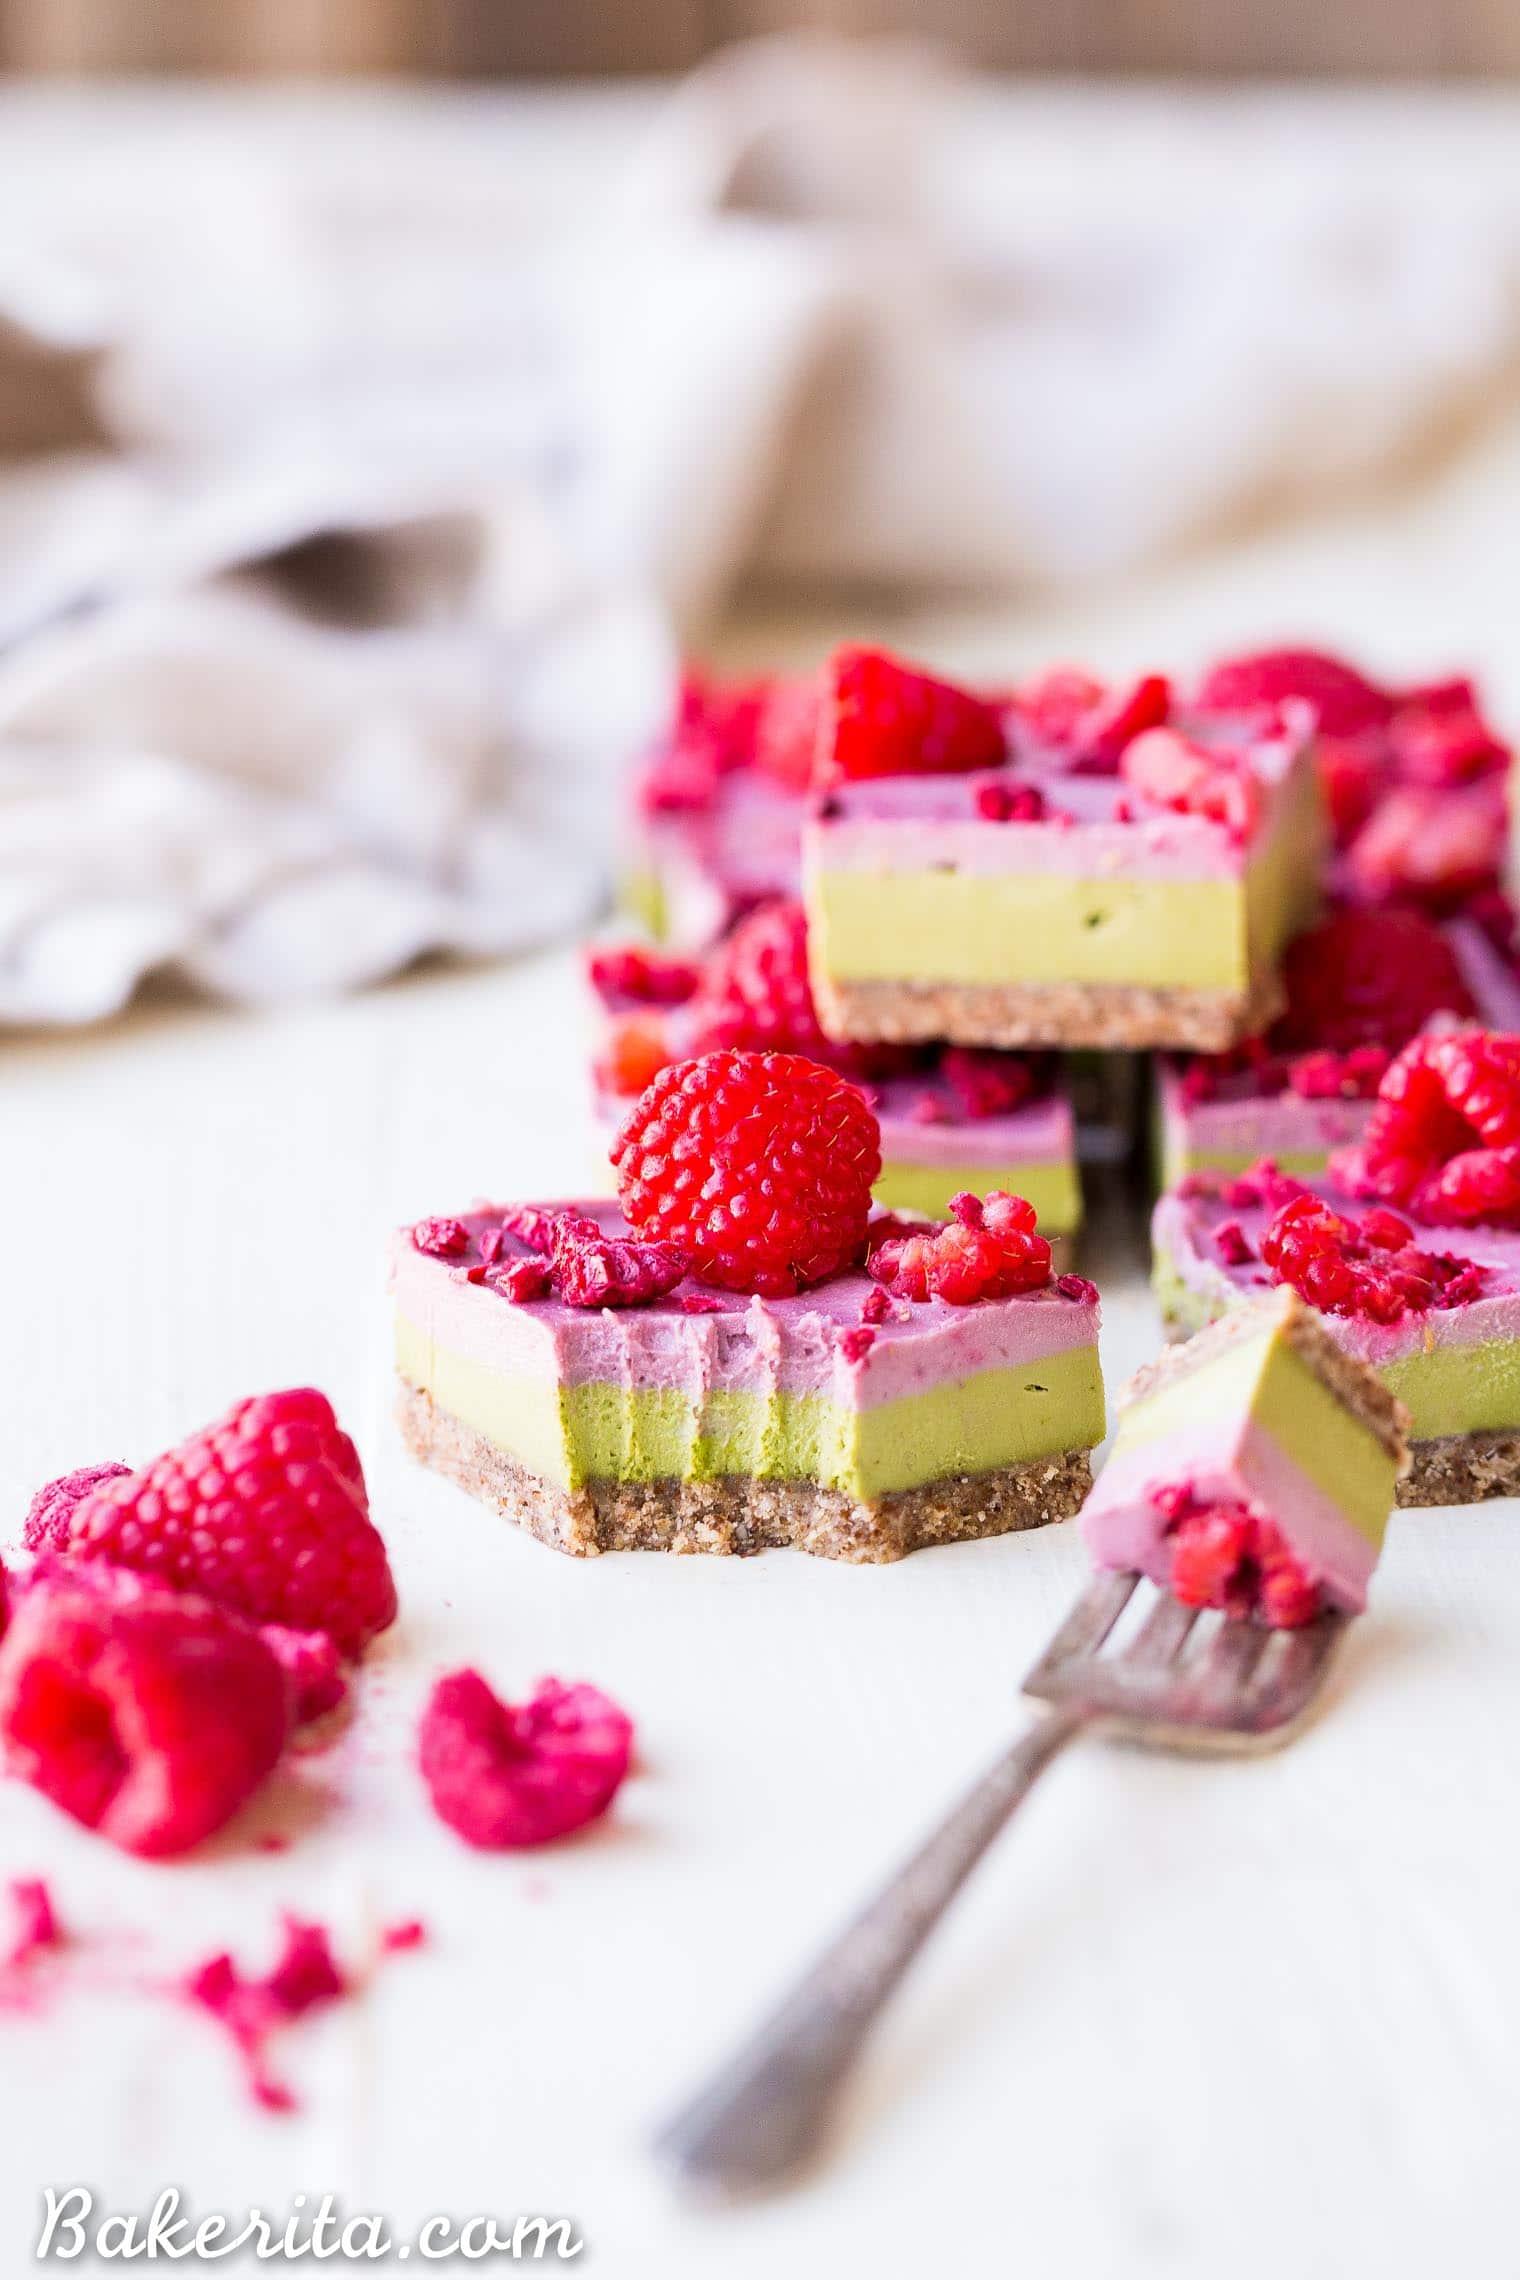 Layered Raspberry Matcha Bars - Gluten Free, Paleo, Refined Sugar Free, Dairy Free & Vegan